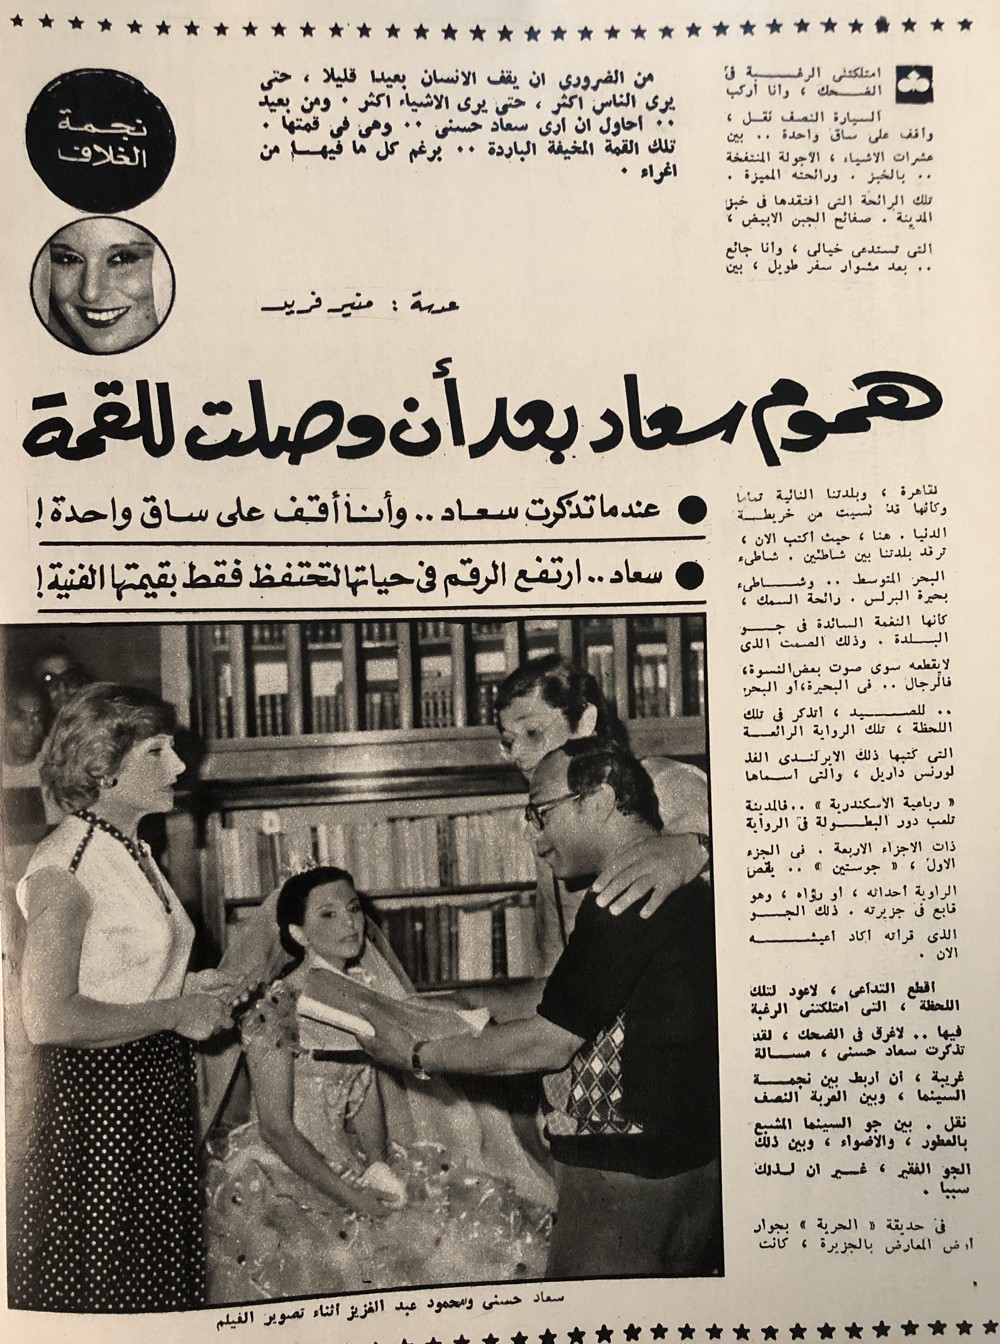 سعاد - مقال صحفي : هموم سعاد بعد أن وصلت للقمة 1978 م 157